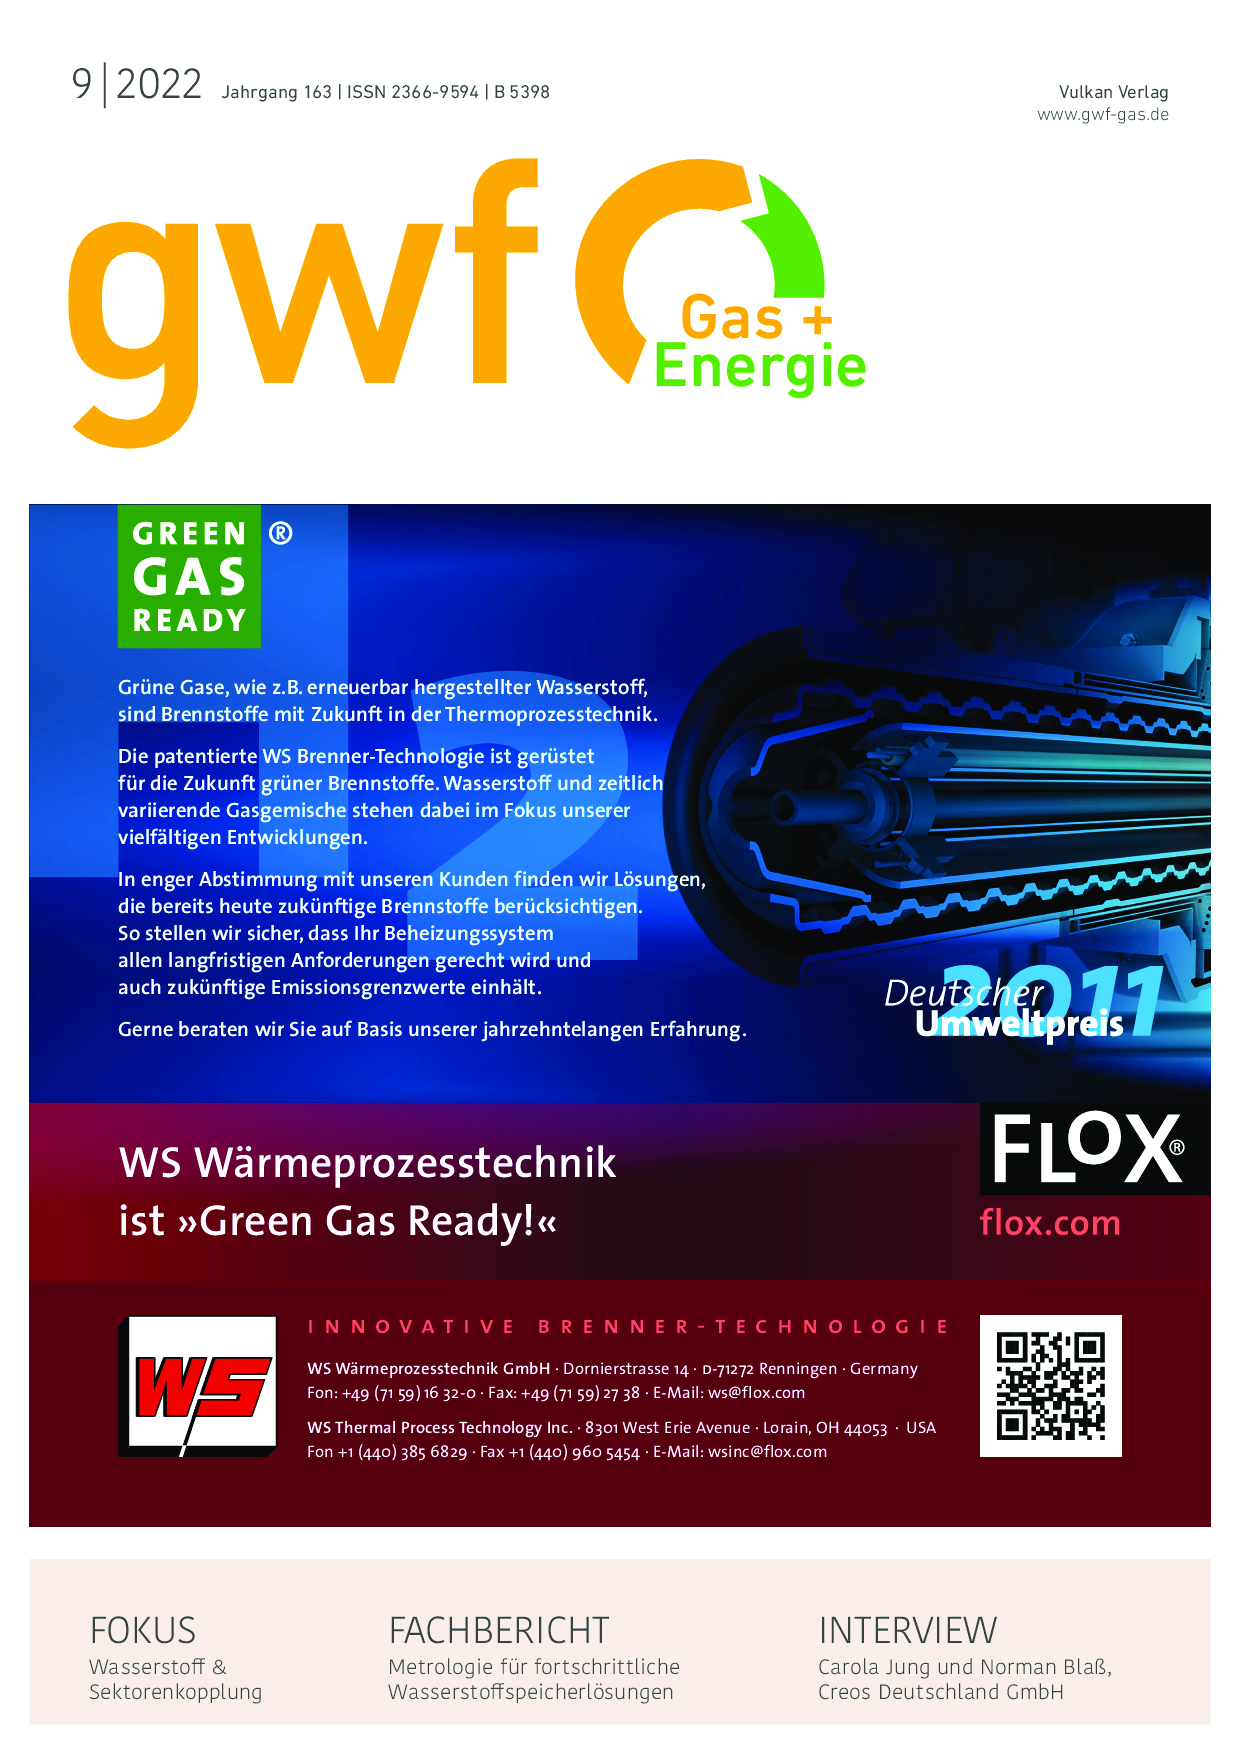 gwf Gas+Energie - 09 2022